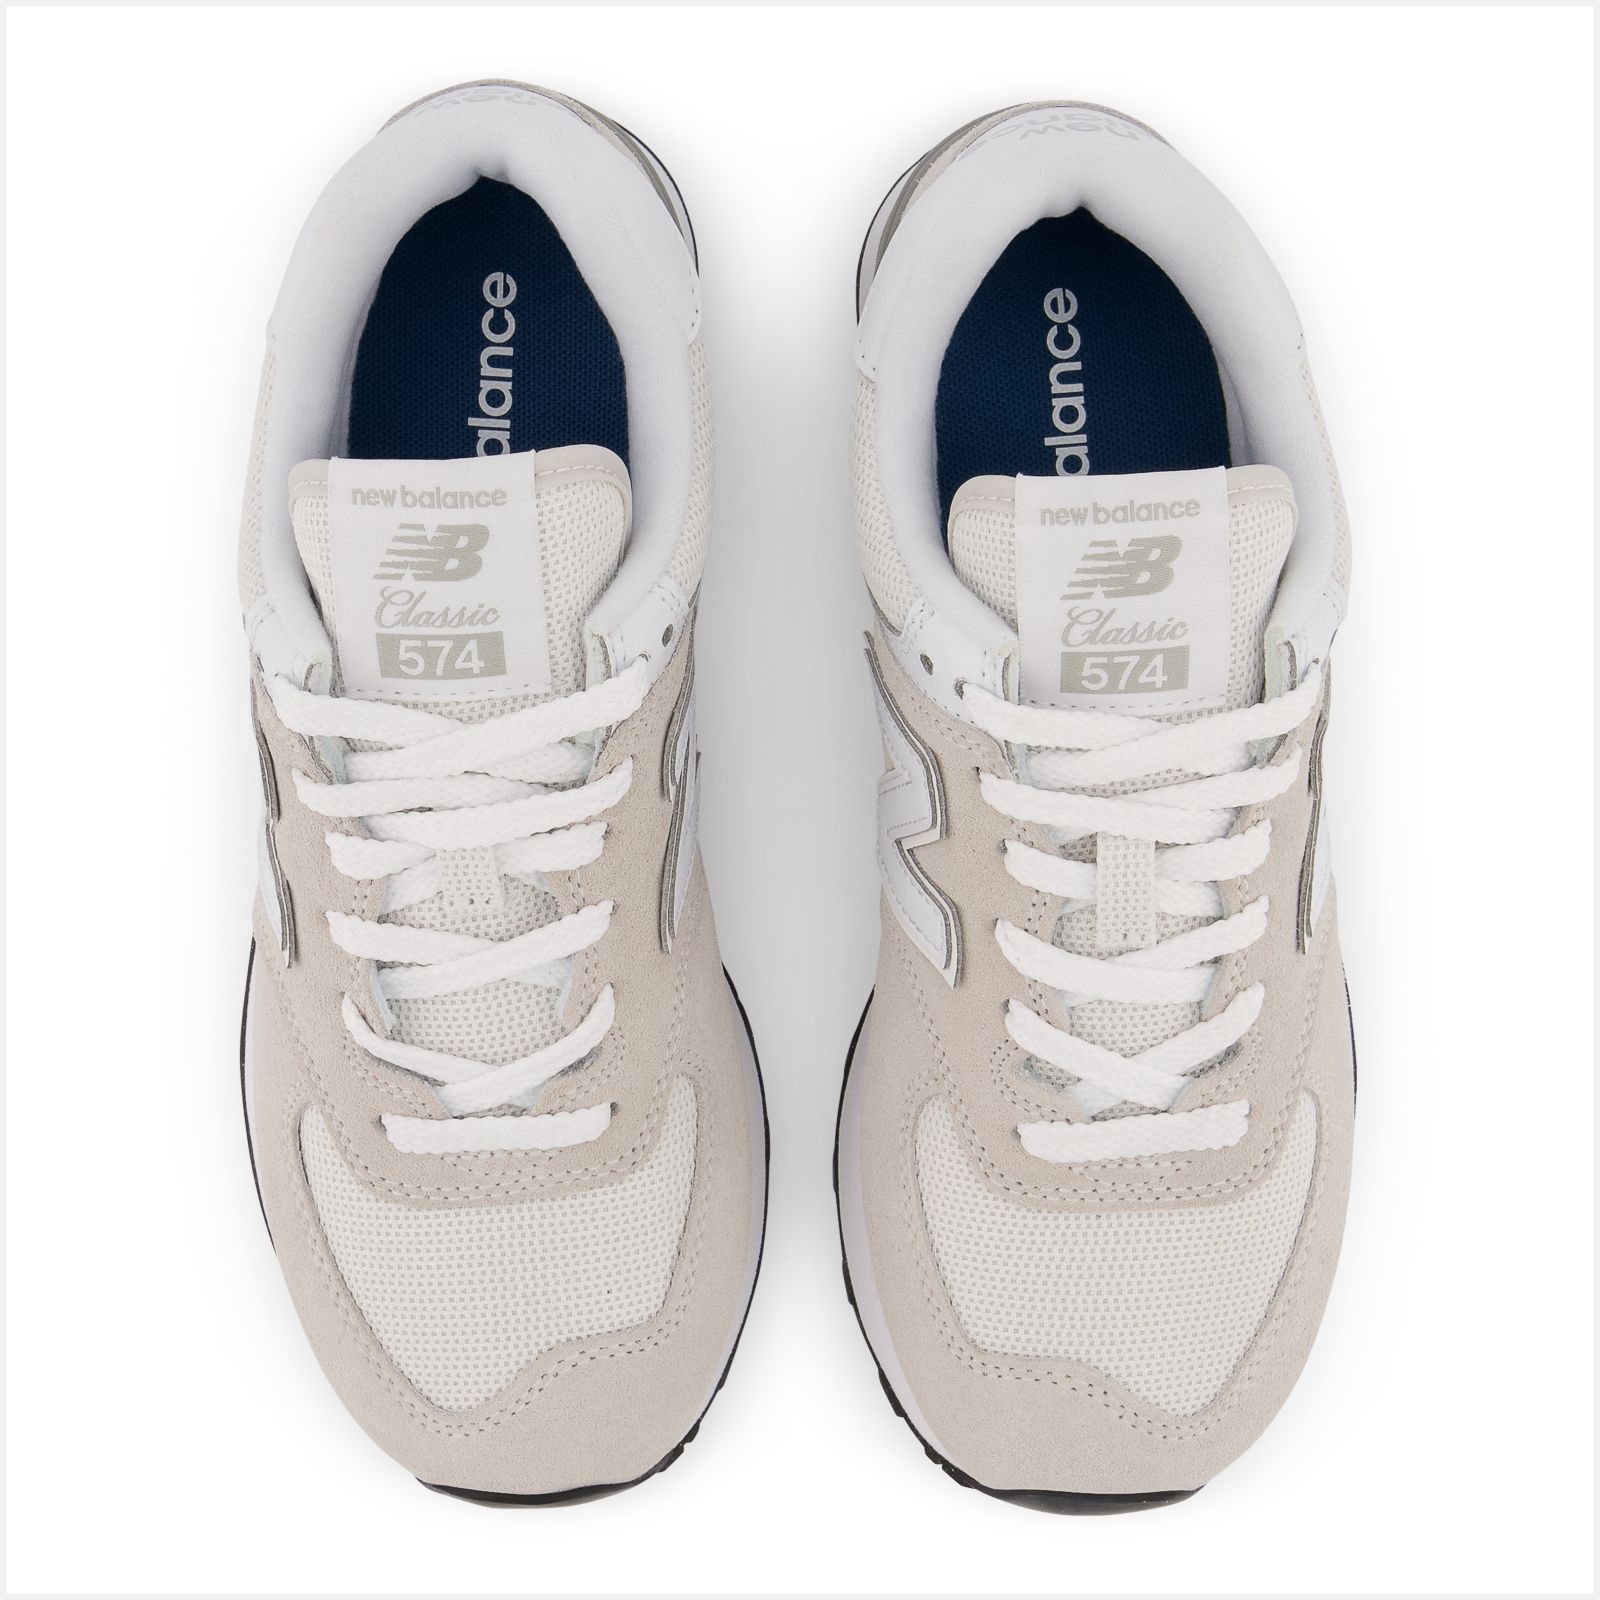 Zapatillas New Balance 574 blancas y gris muy claro de m